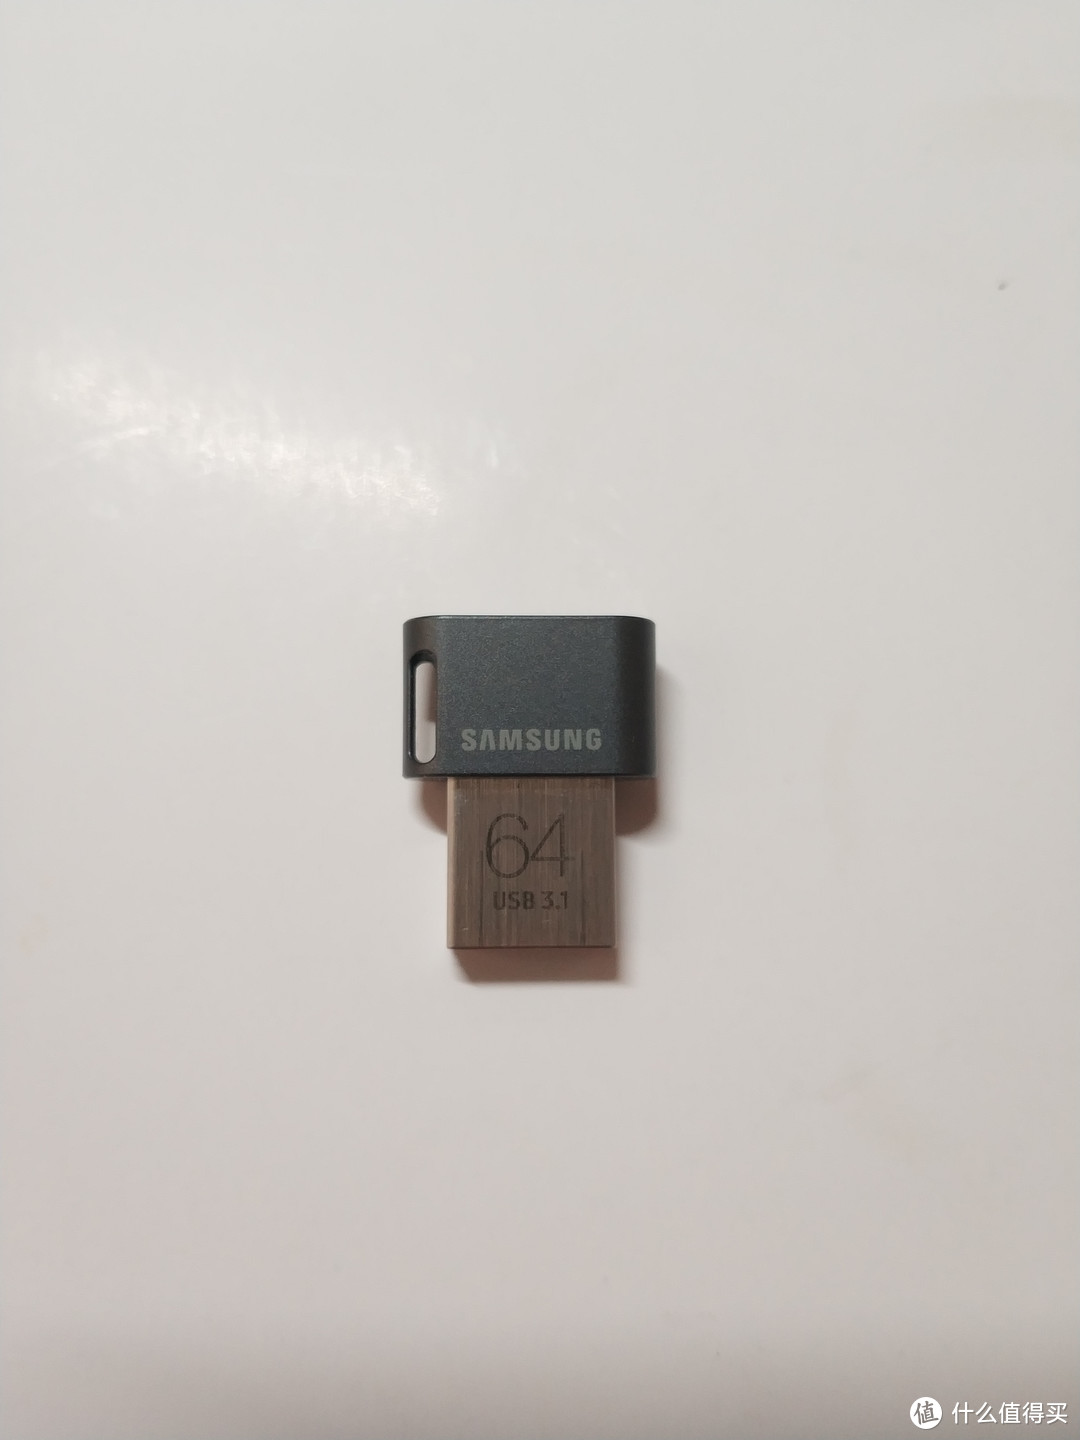 SAMSUNG三星64GB USB3.1 U盘开箱晒单